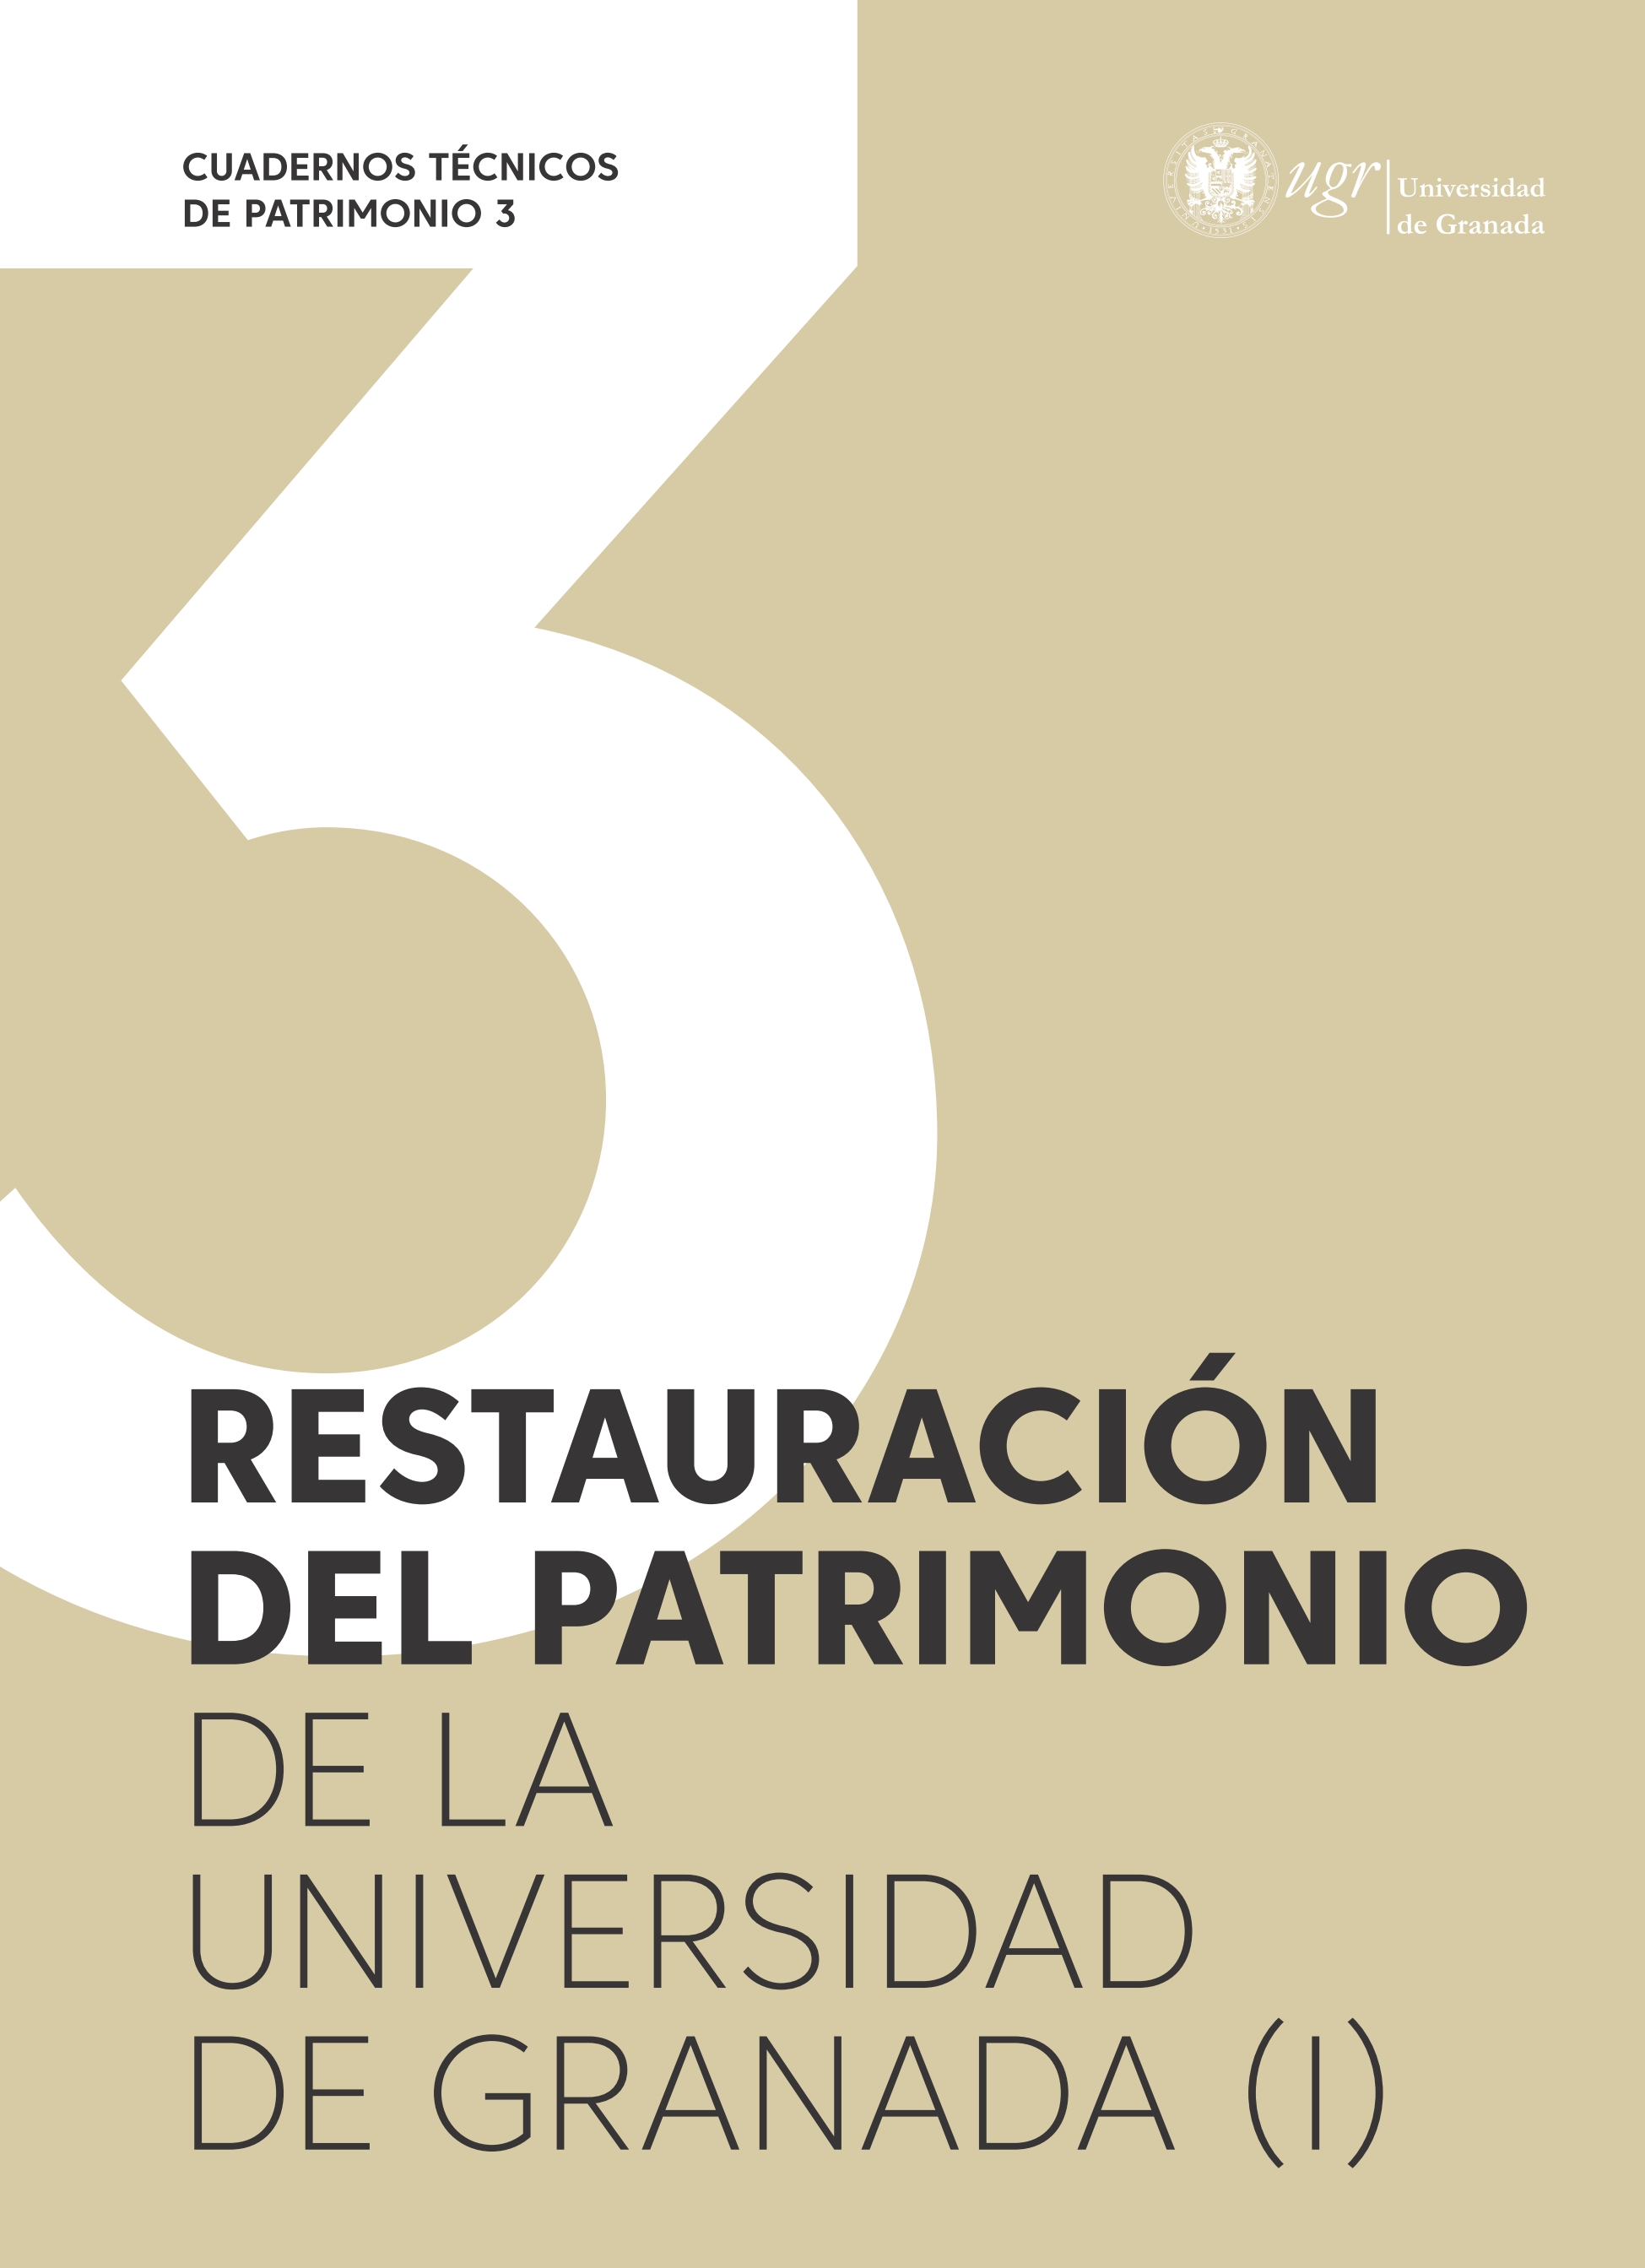 Imagen de portada del libro Restauración del patrimonio de la Universidad de Granada (I)